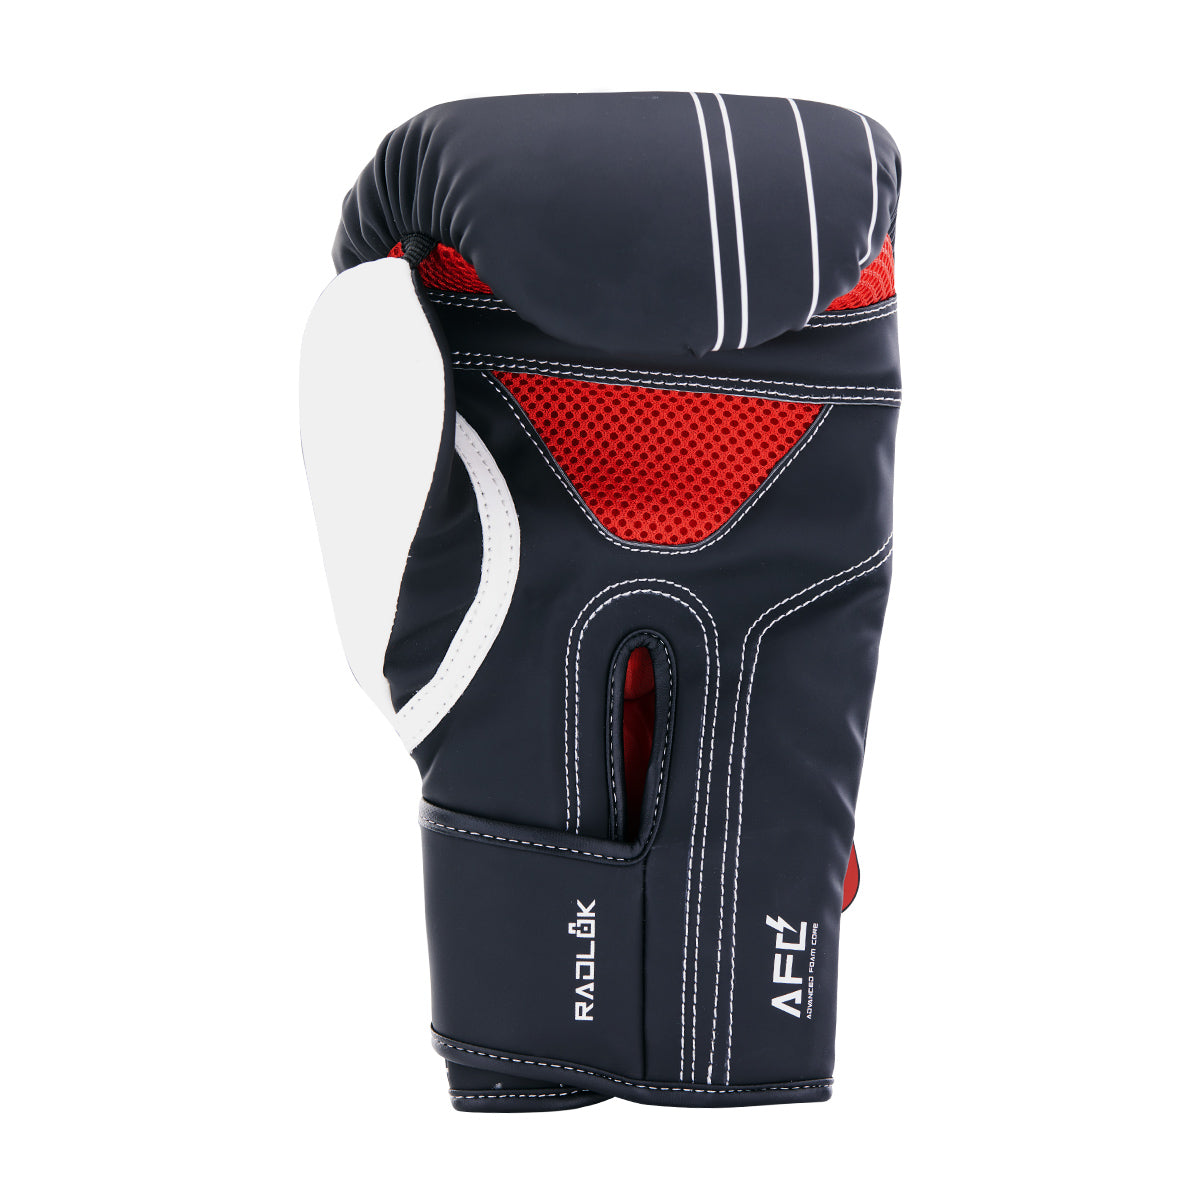 Brave Boxing Gloves - Black/White/Red